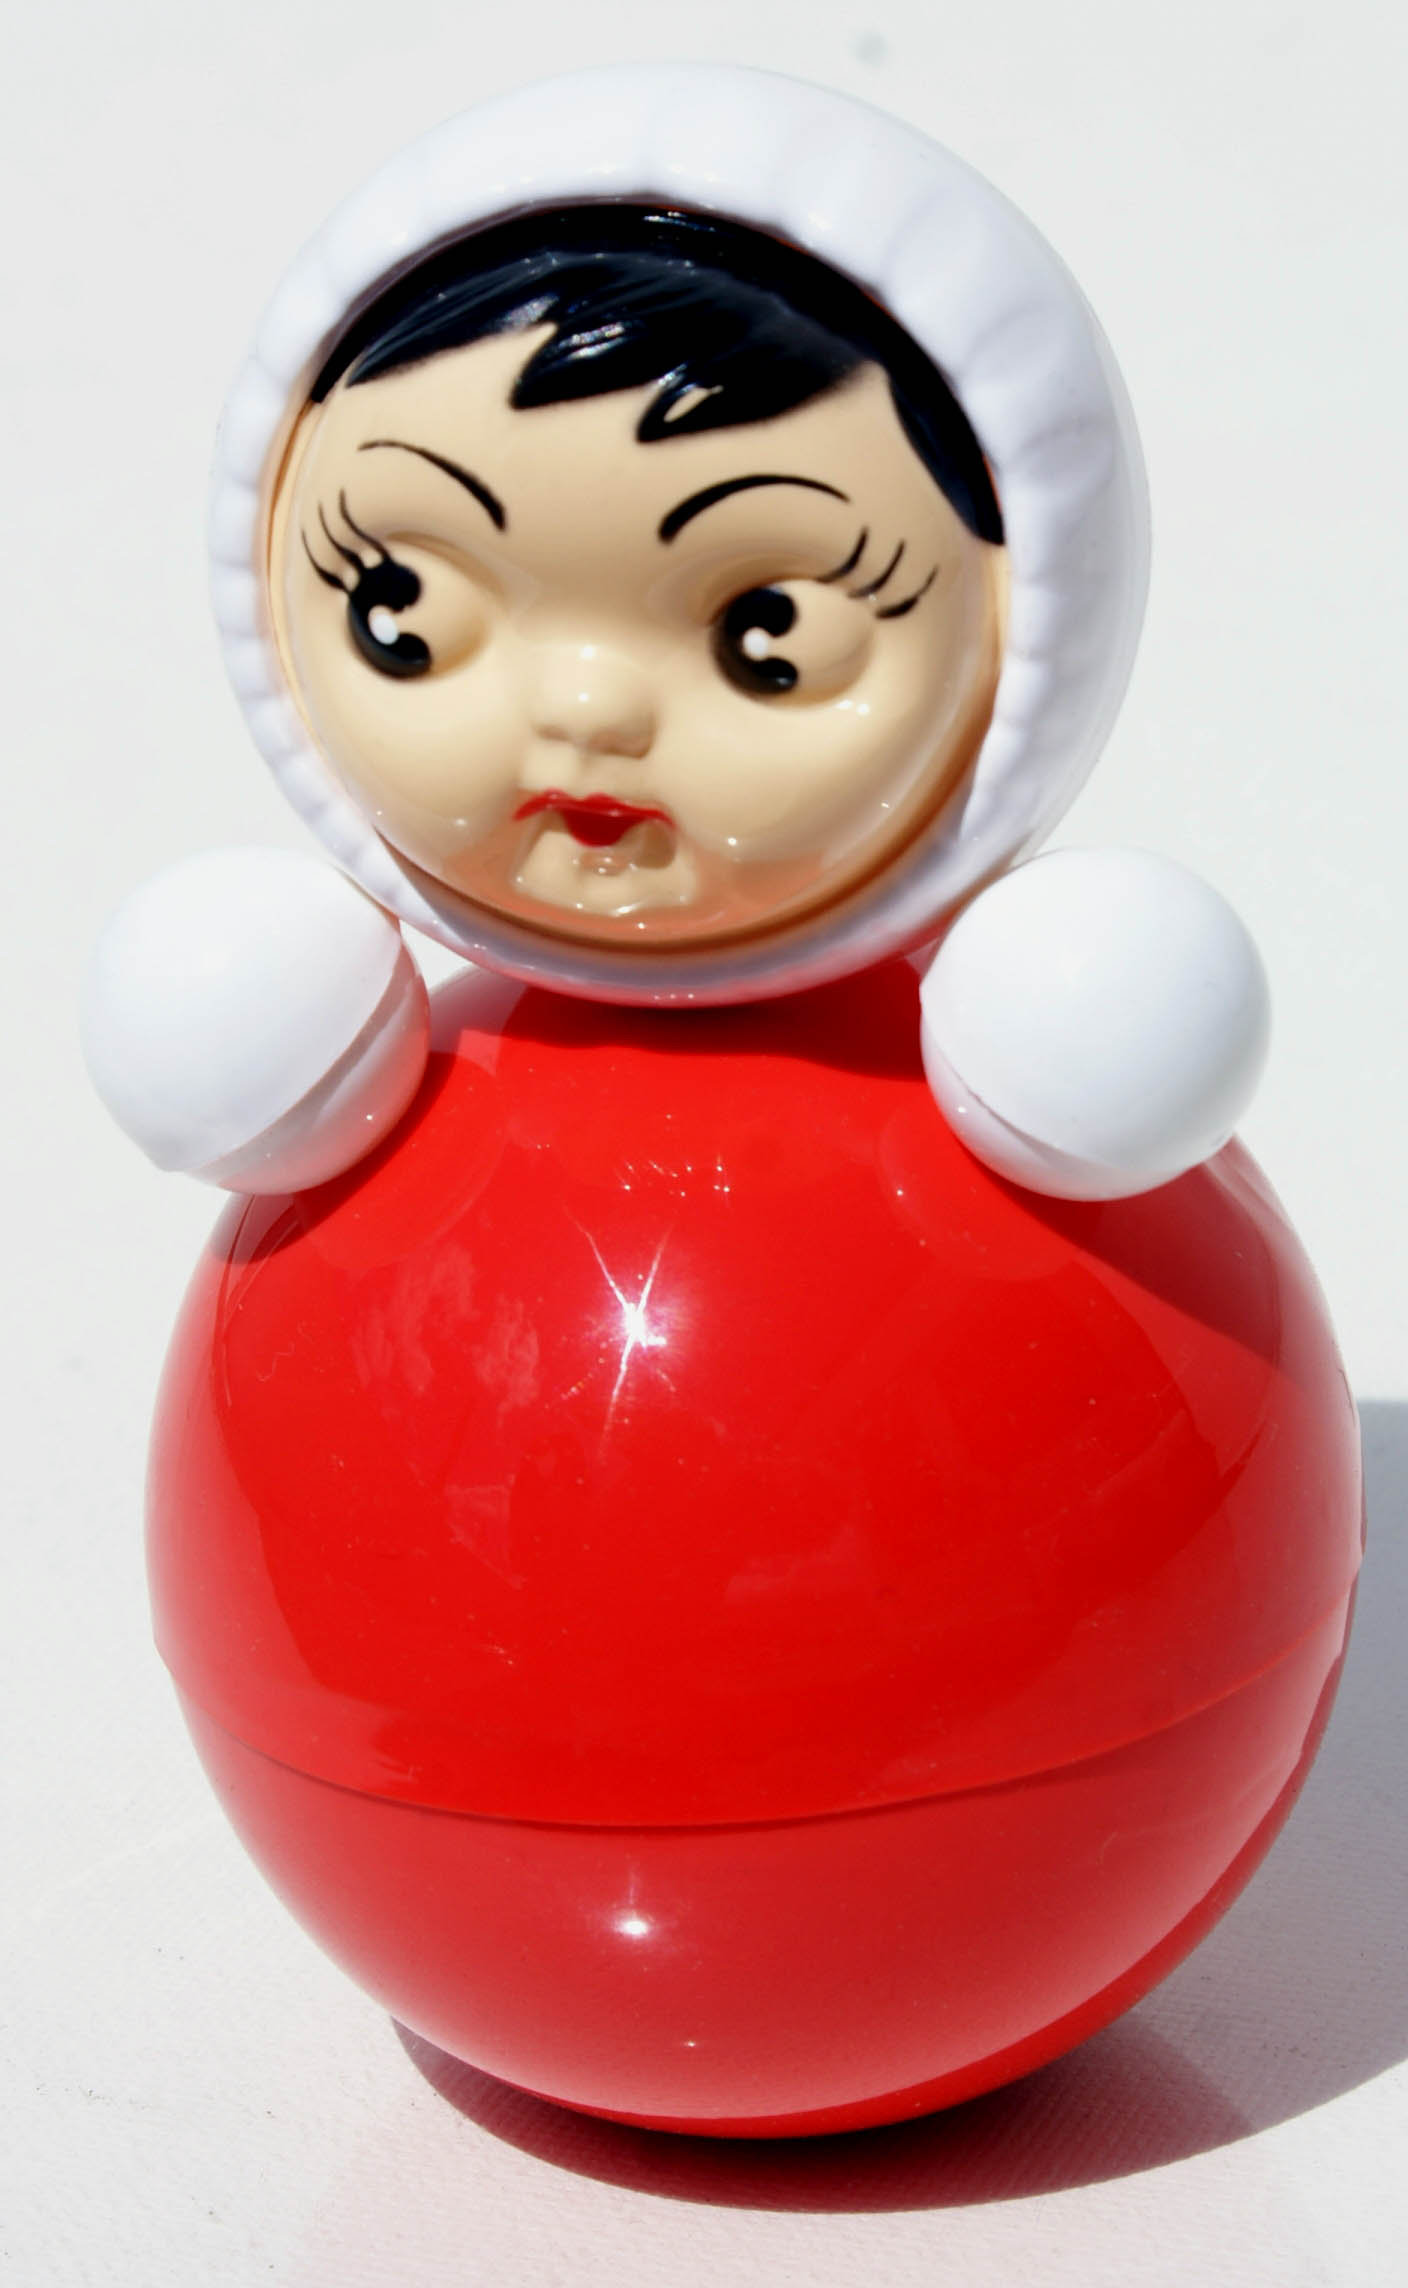 Russisk vippe-toy tumbler red dukke til baby berømte nyt fra rusland - 90.92 kr. - Danske Auktioner